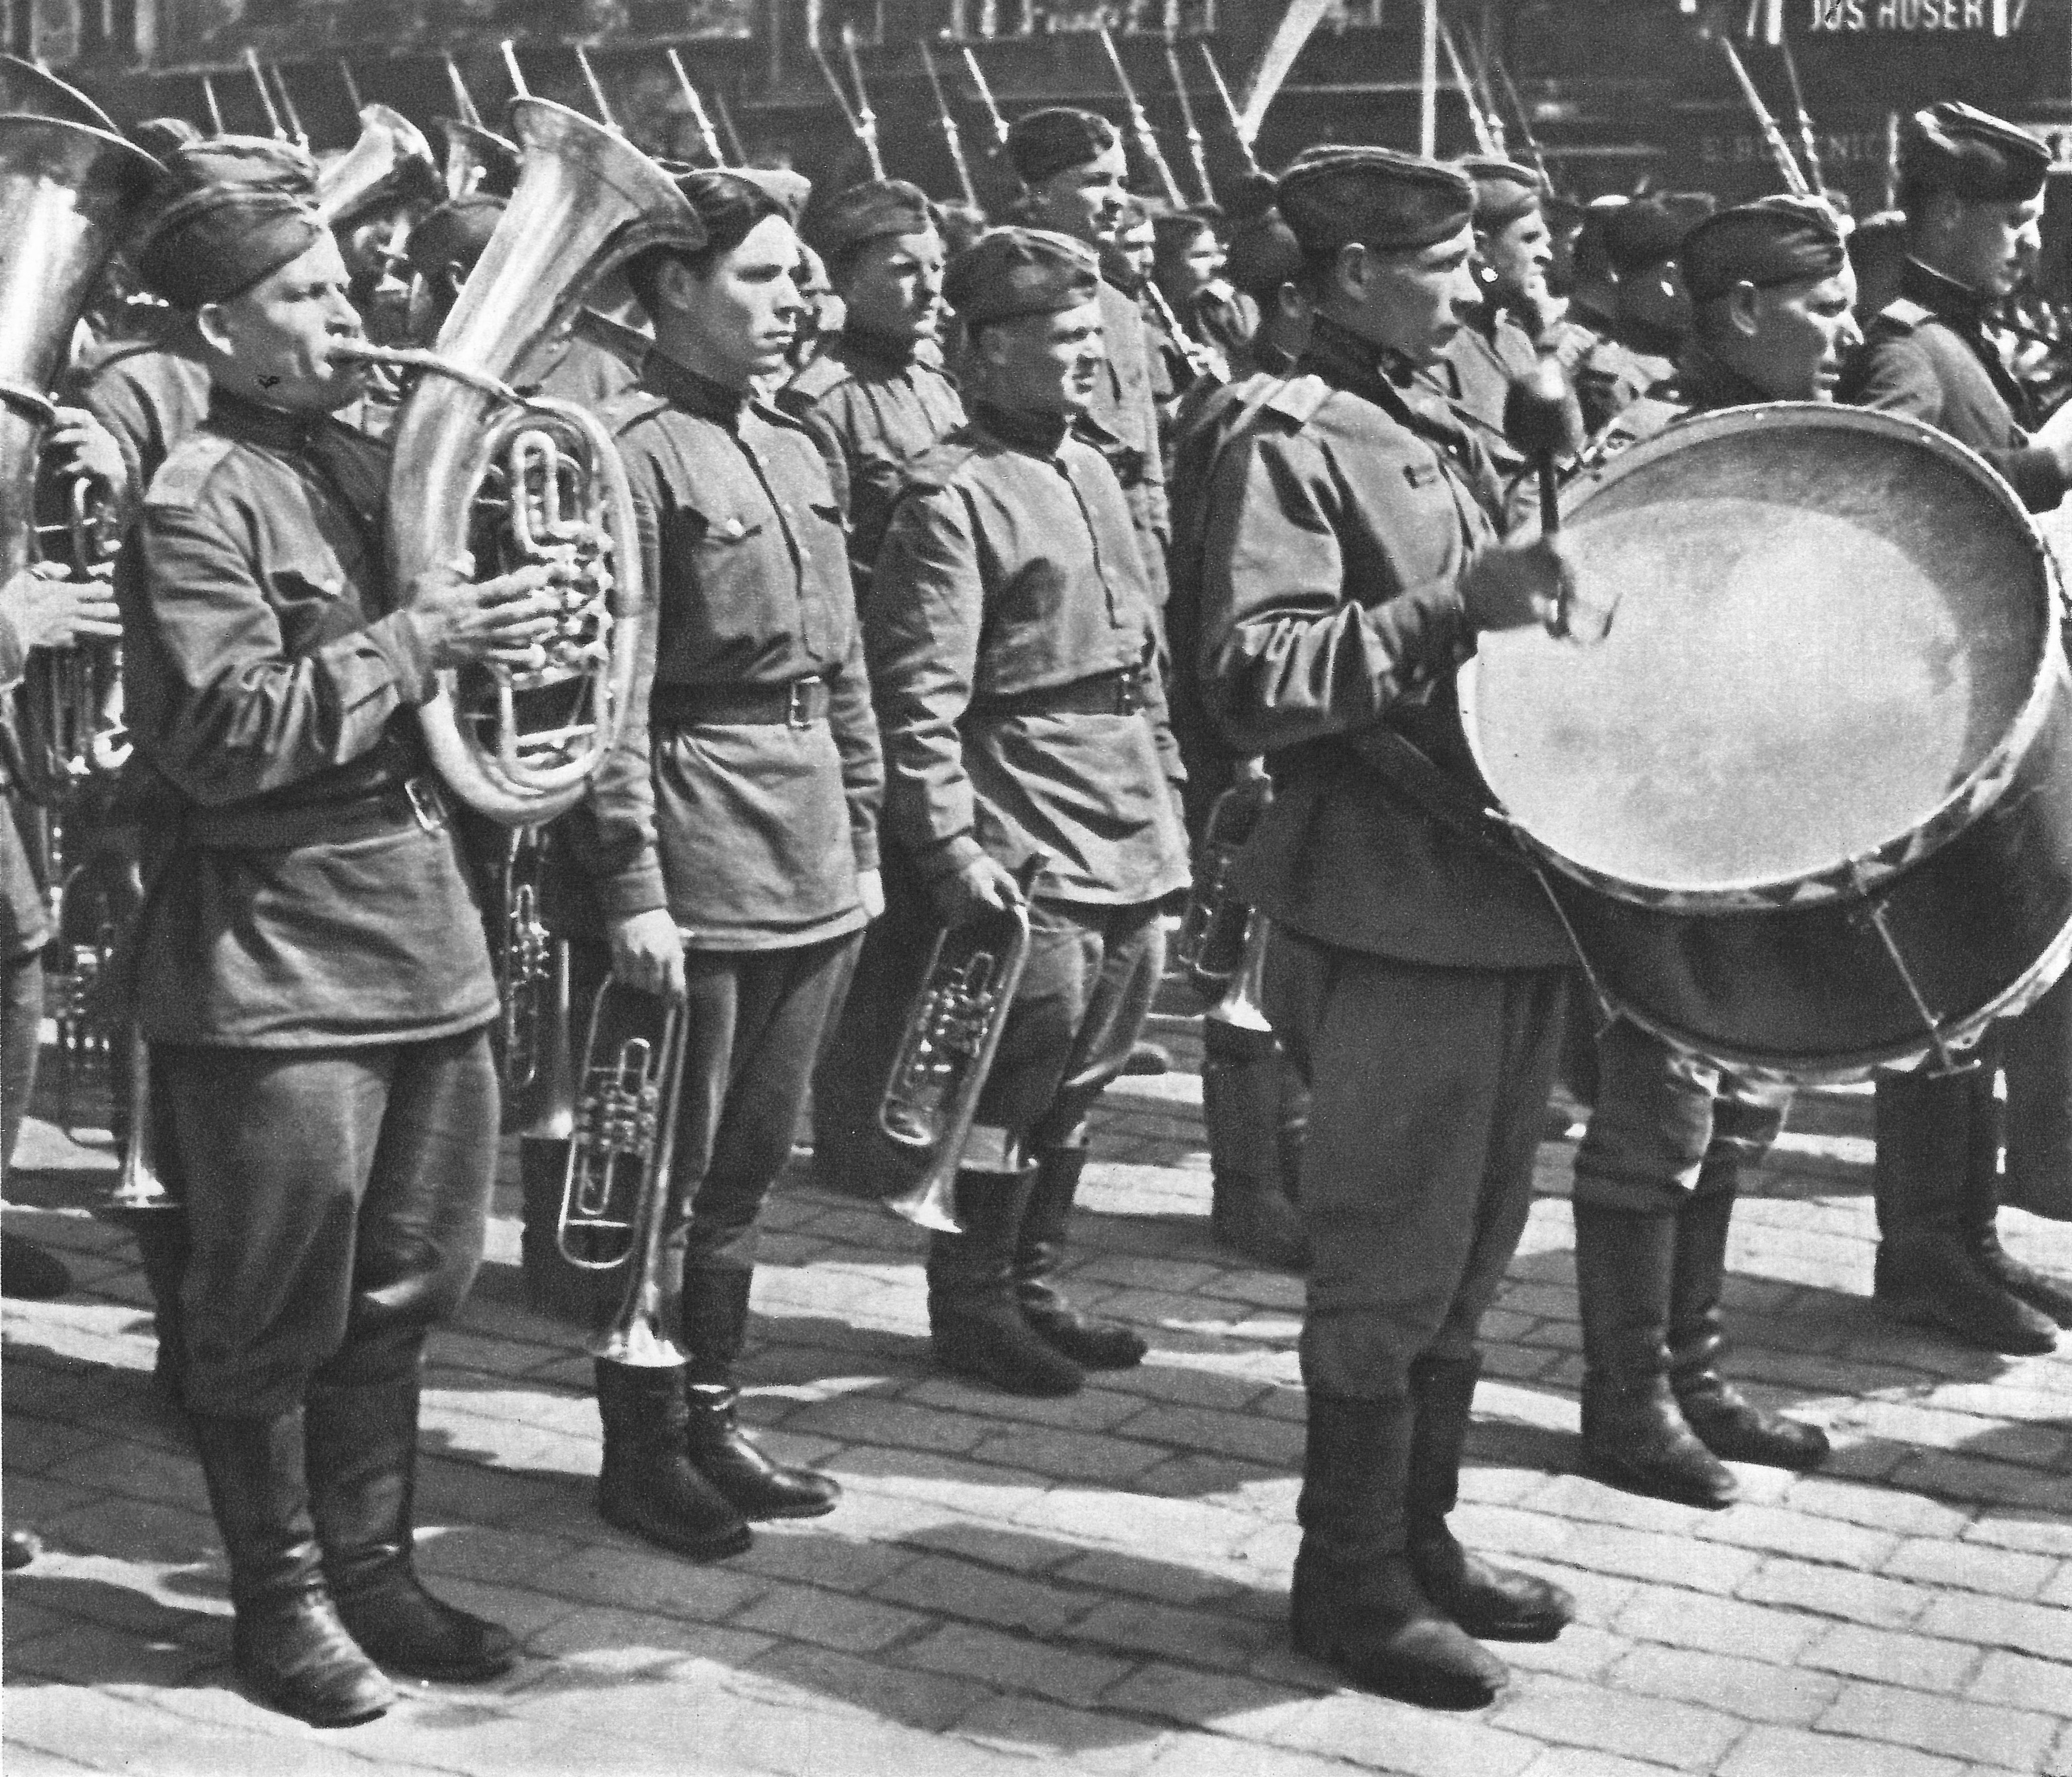 Песни написанные в 1945 году. Парад Победы 1945 оркестр. Военные оркестры в годы ВОВ 1941-1945. Музыканты на войне. Военный оркестр Советской армии.